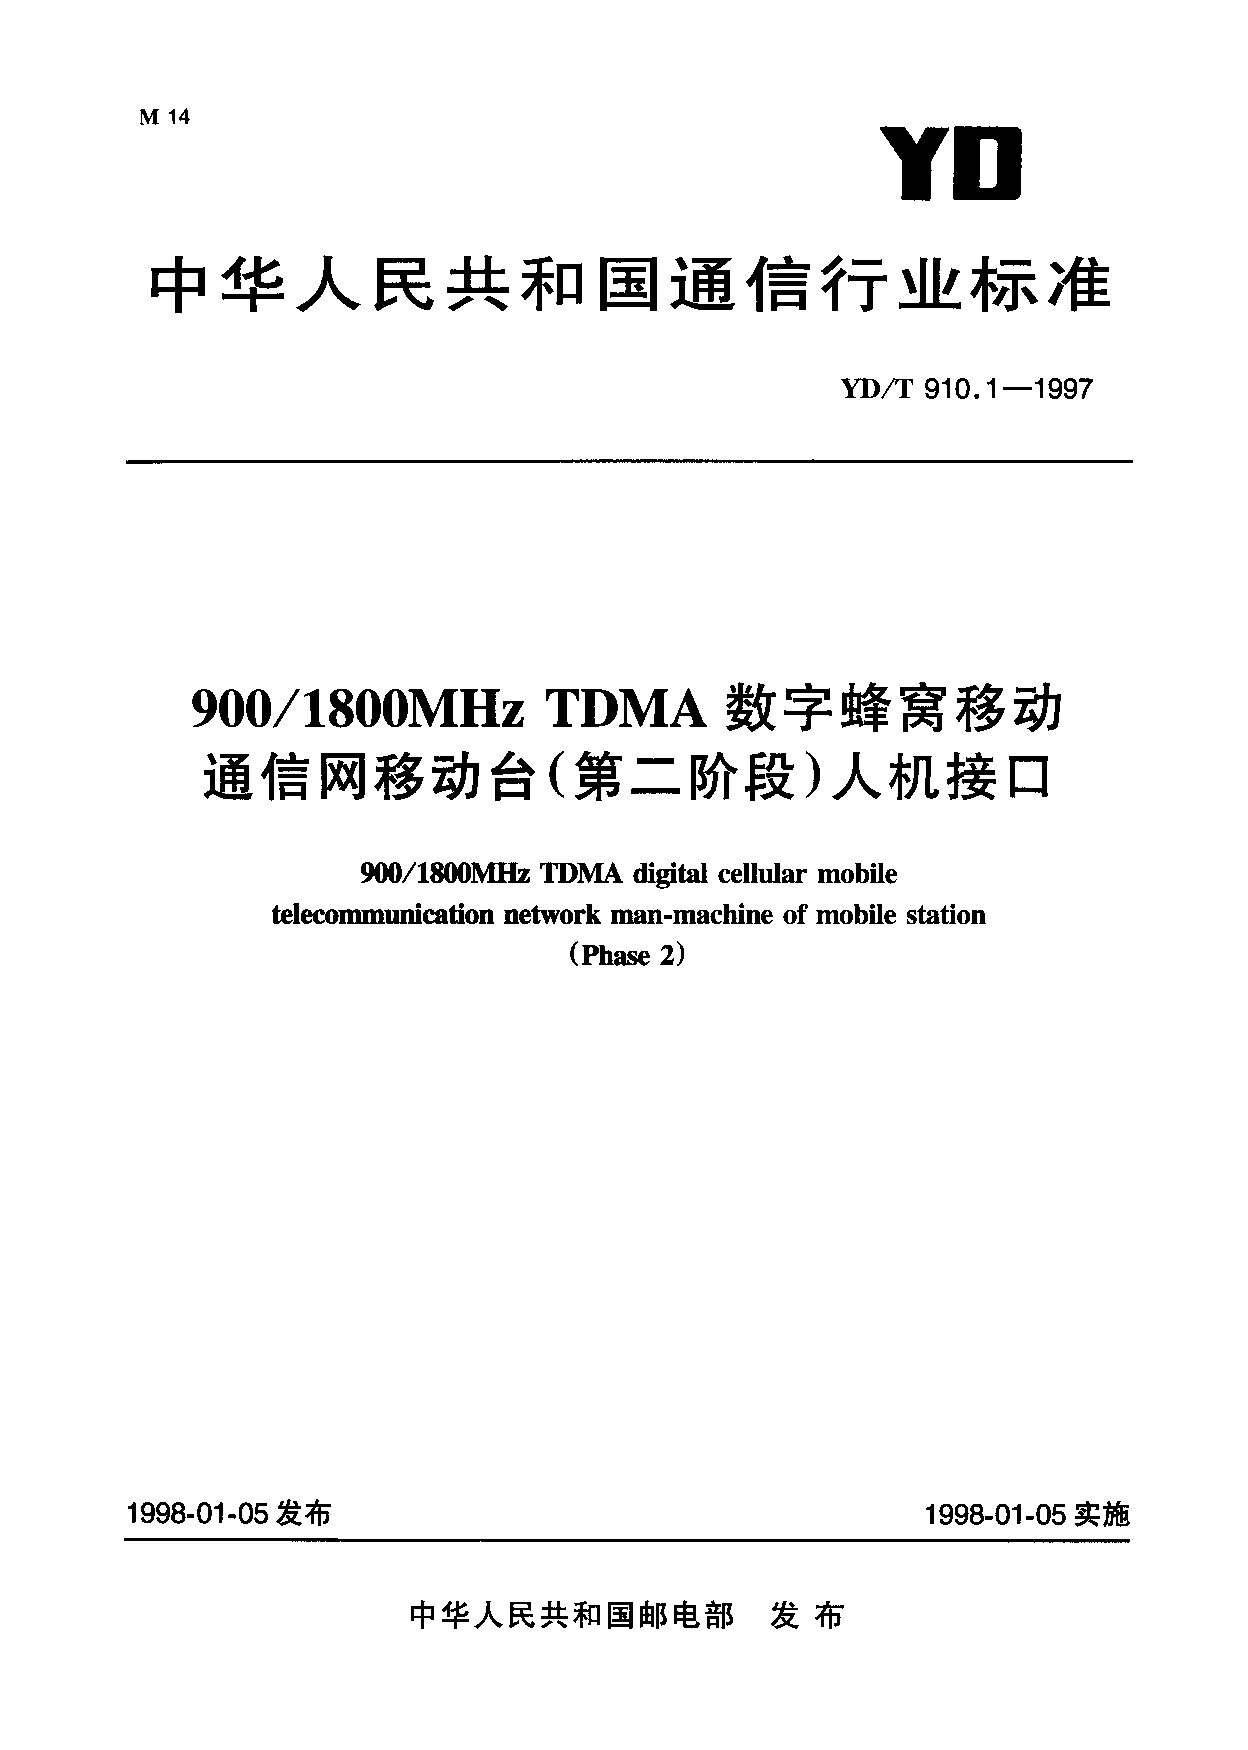 YD/T 910.1-1997